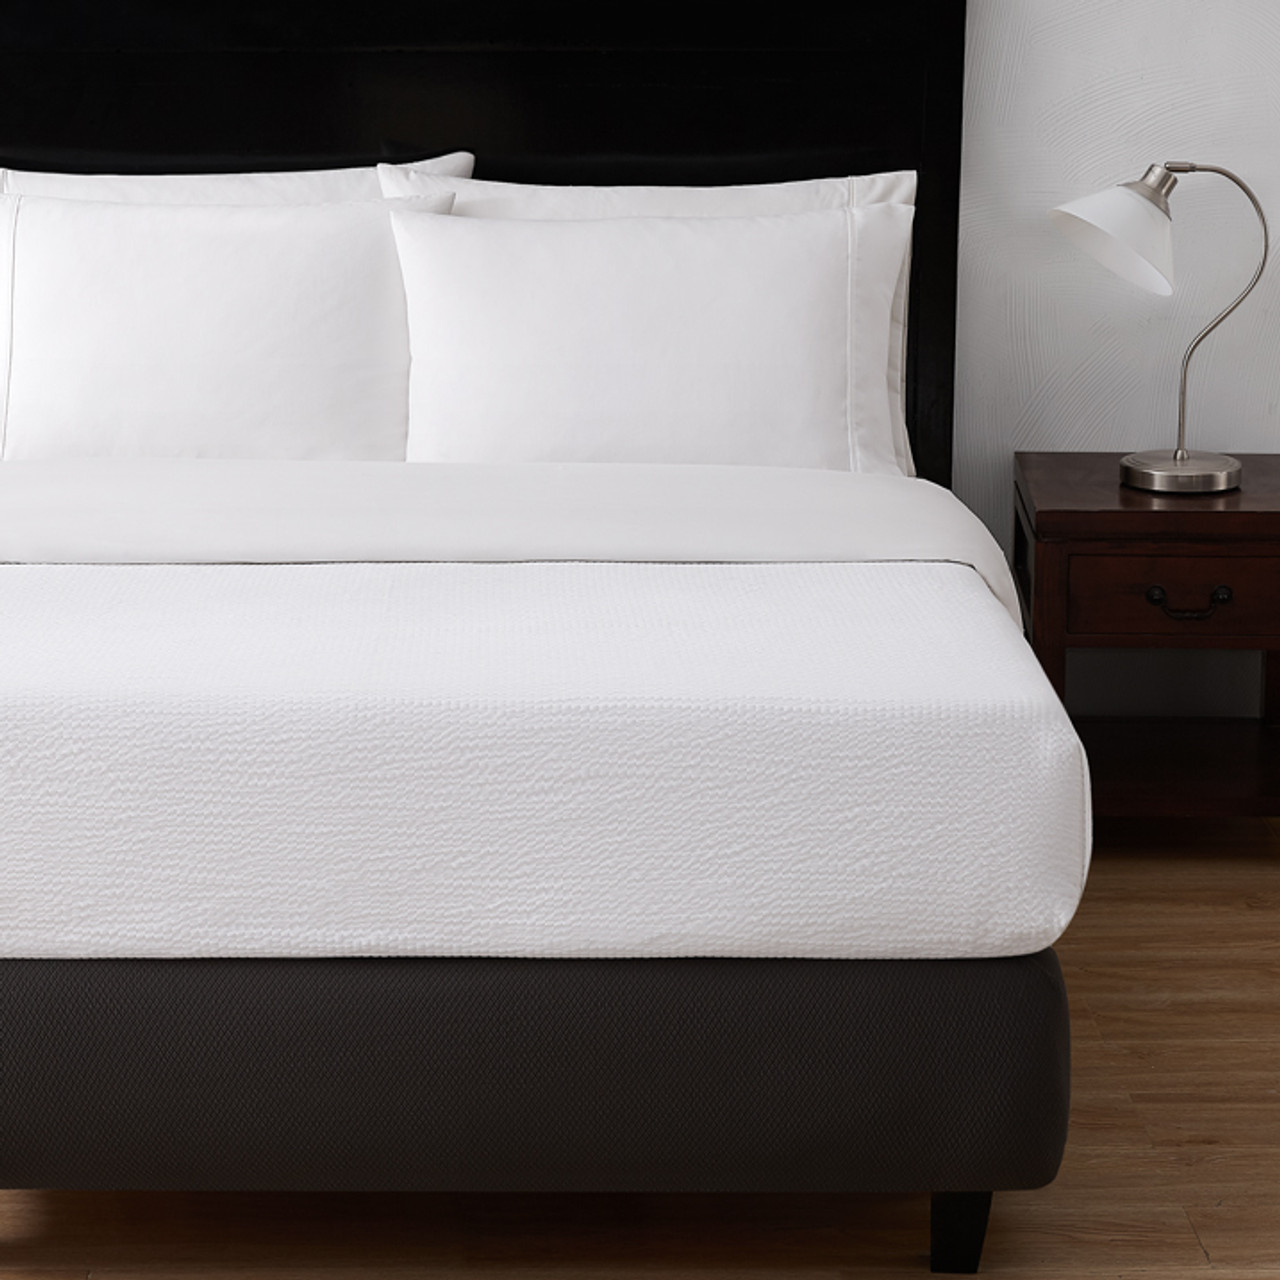 Classic Seersucker top sheet on bed with dark wooden accents.